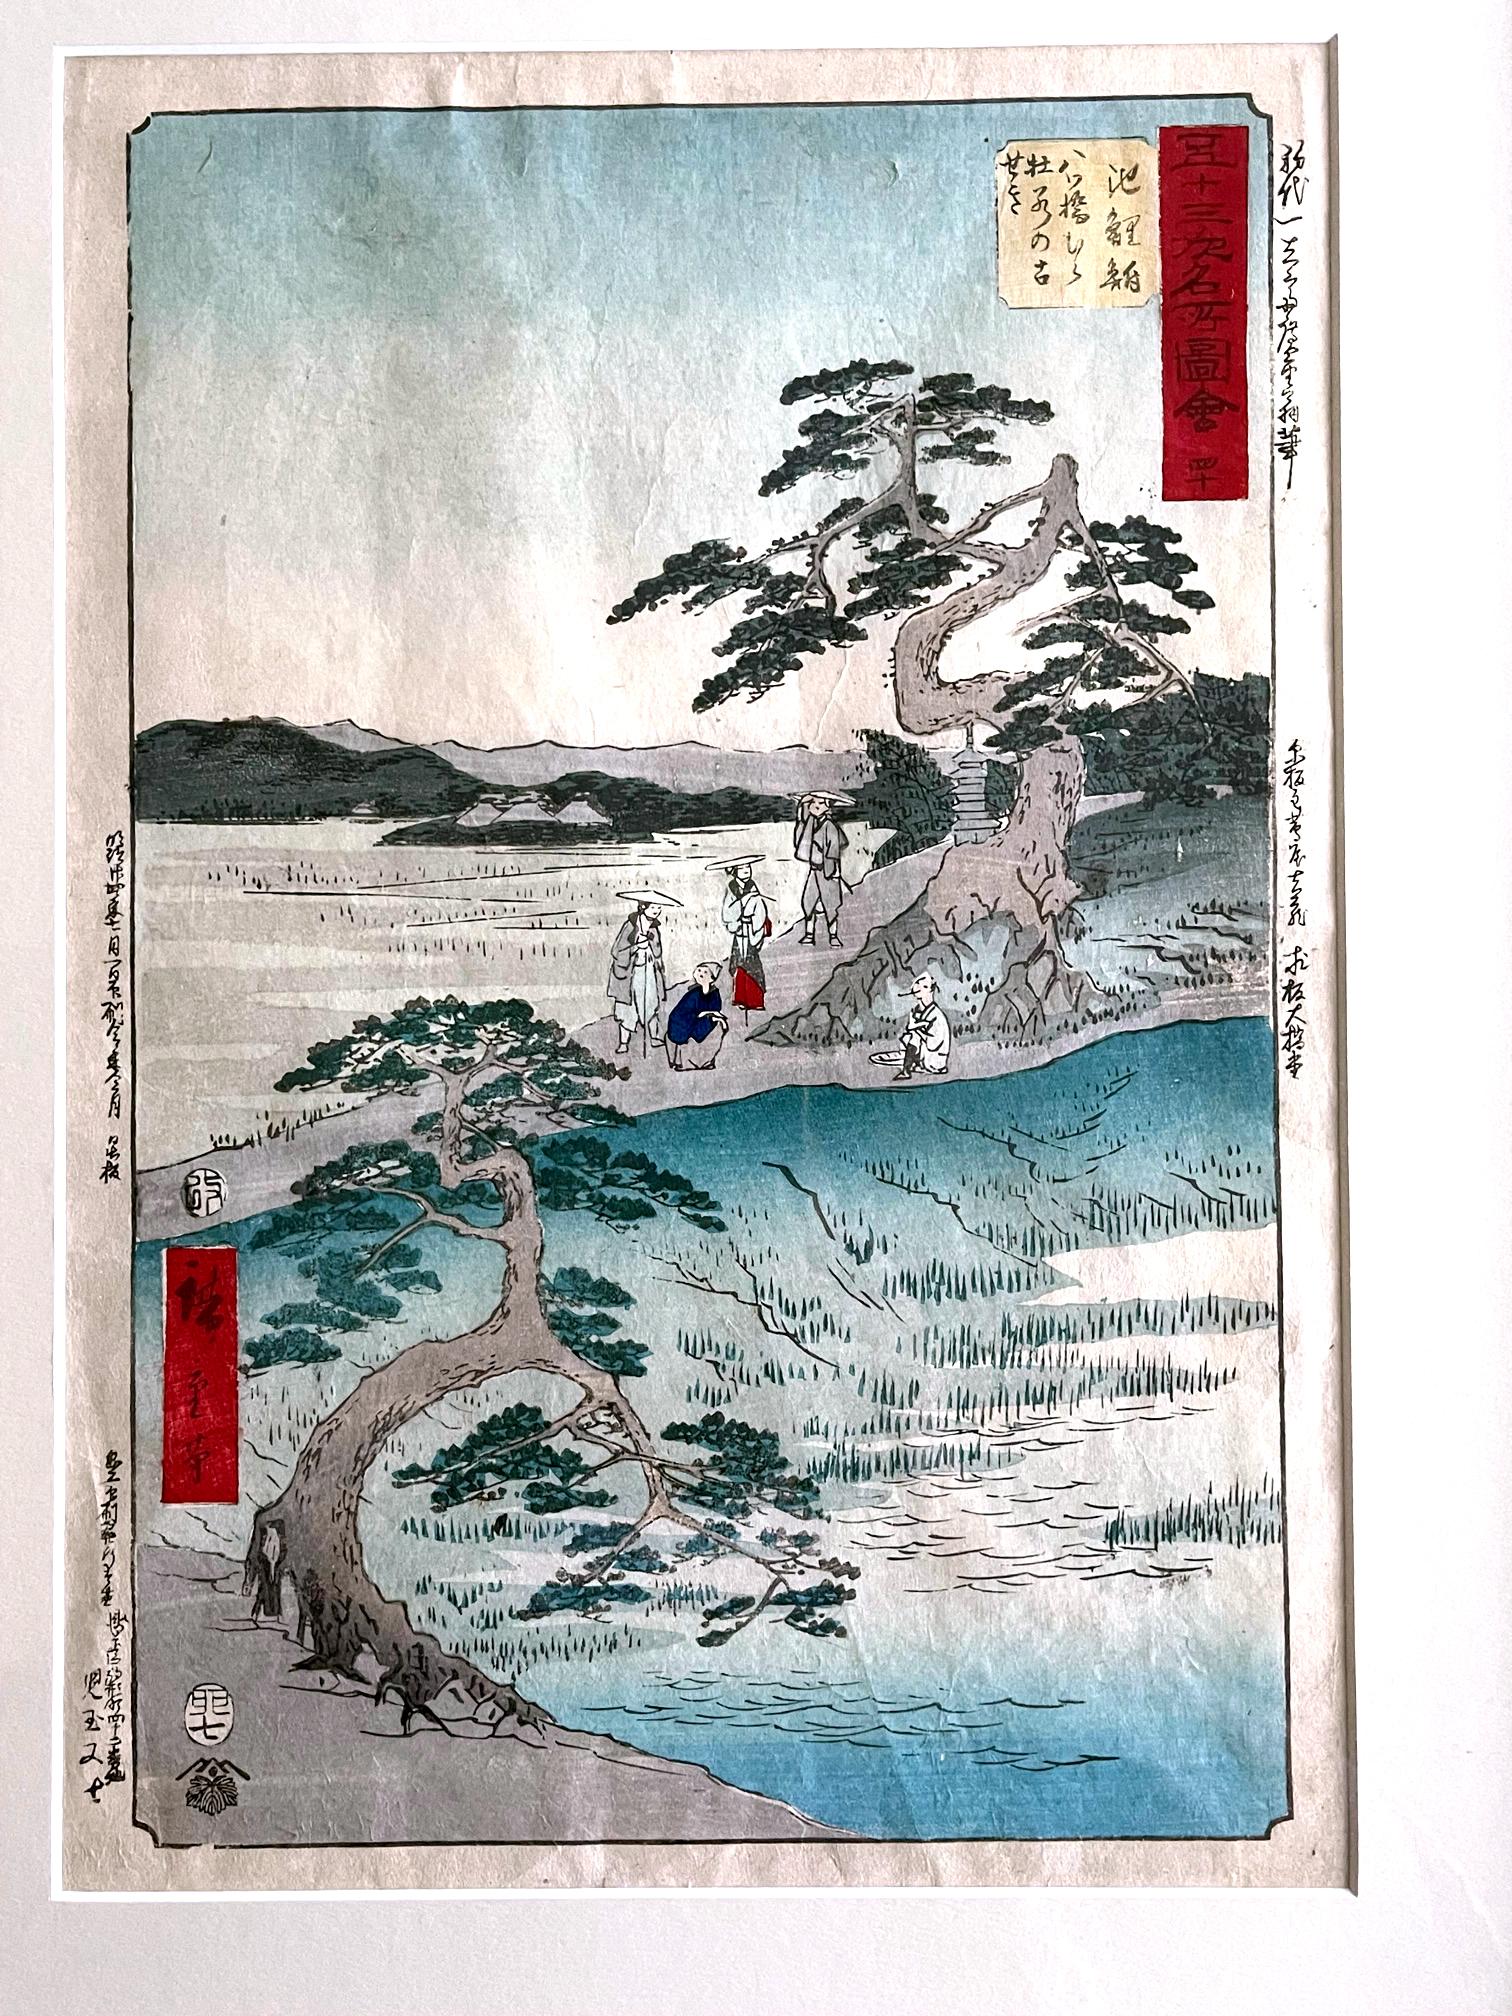 Artist: Utagawa Hiroshige (1797 - 1858)
Series: The Fifty-three Stations of the Tokaido (Upright)
Number: 40 Chiryu: The Former Site of the Irises at Eightbridge Village
(Chiryu, Yatsuhashimura kakitsubata no koseki)
Medium: Woodblock